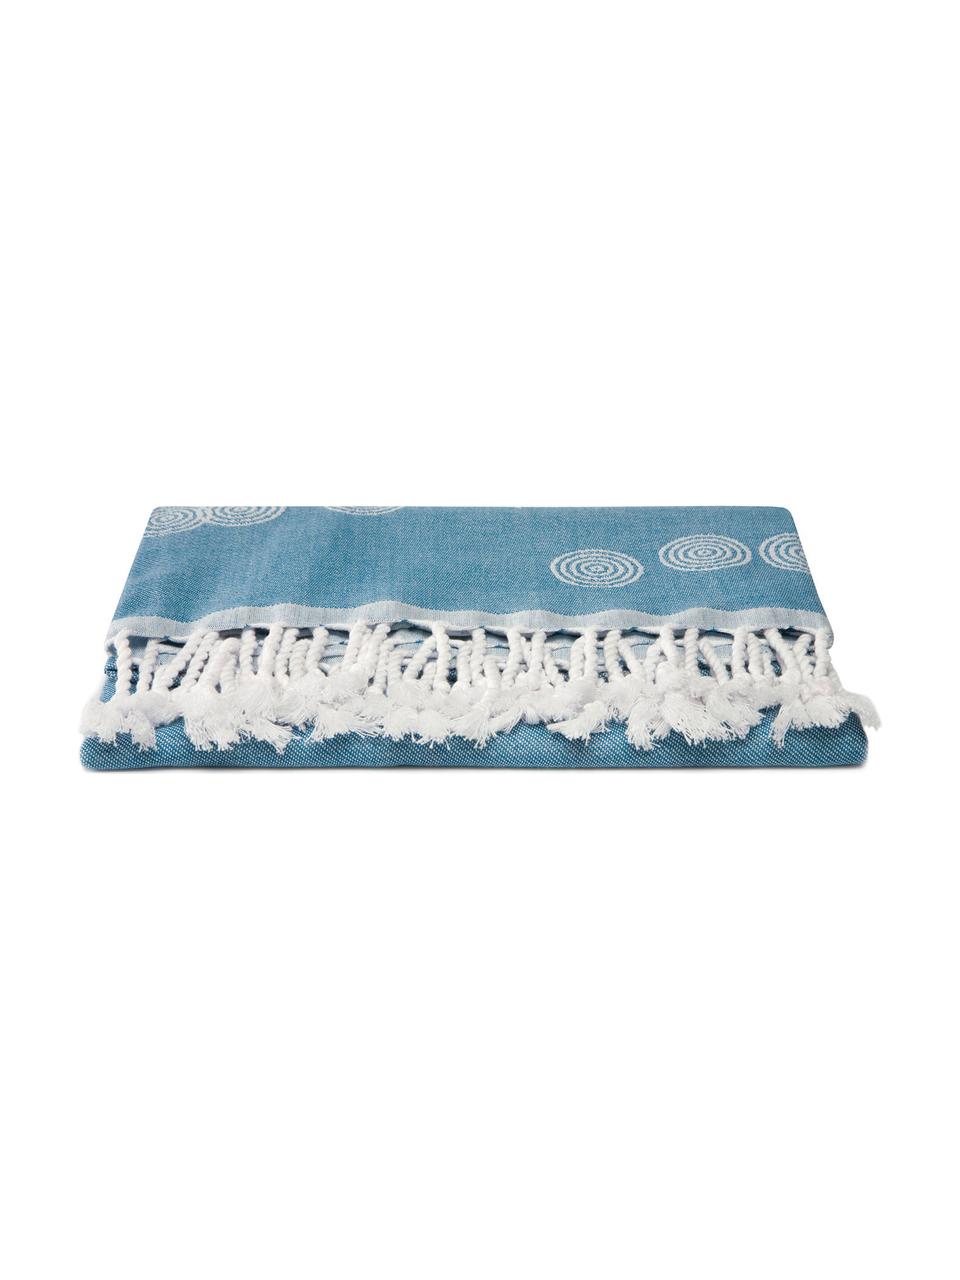 Hamamtuch Pisces, 100% Baumwolle
leichte Stoffqualität, 210 g/m², Blau, Weiss, 90 x 180 cm